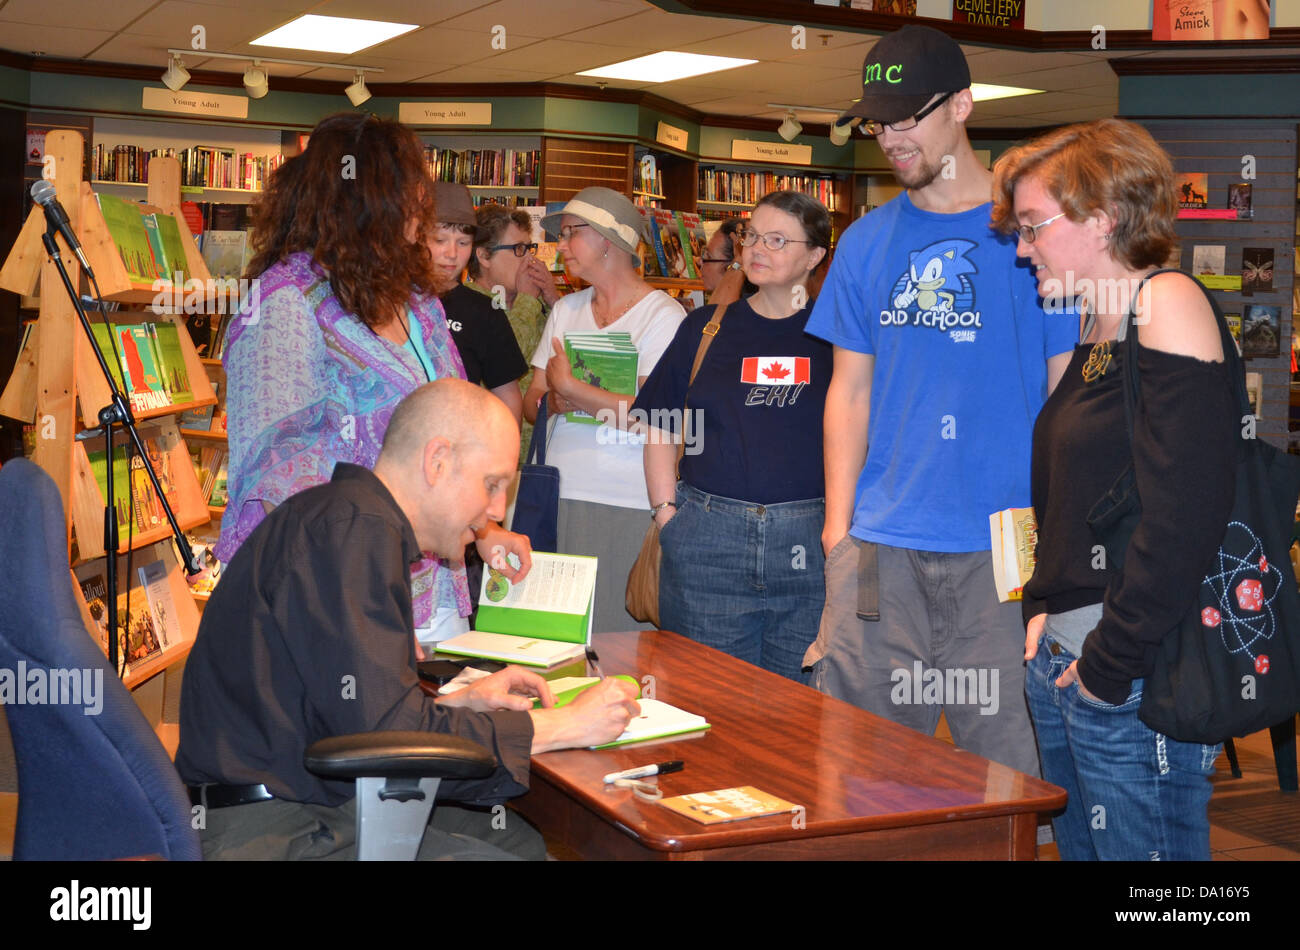 Jim Ottaviani Autogramme ein Buch zur Signierstunde für sein neues Buch "Primaten" bei Nicola es Books 25. Juni 2013 in Ann Arbor, MI Stockfoto